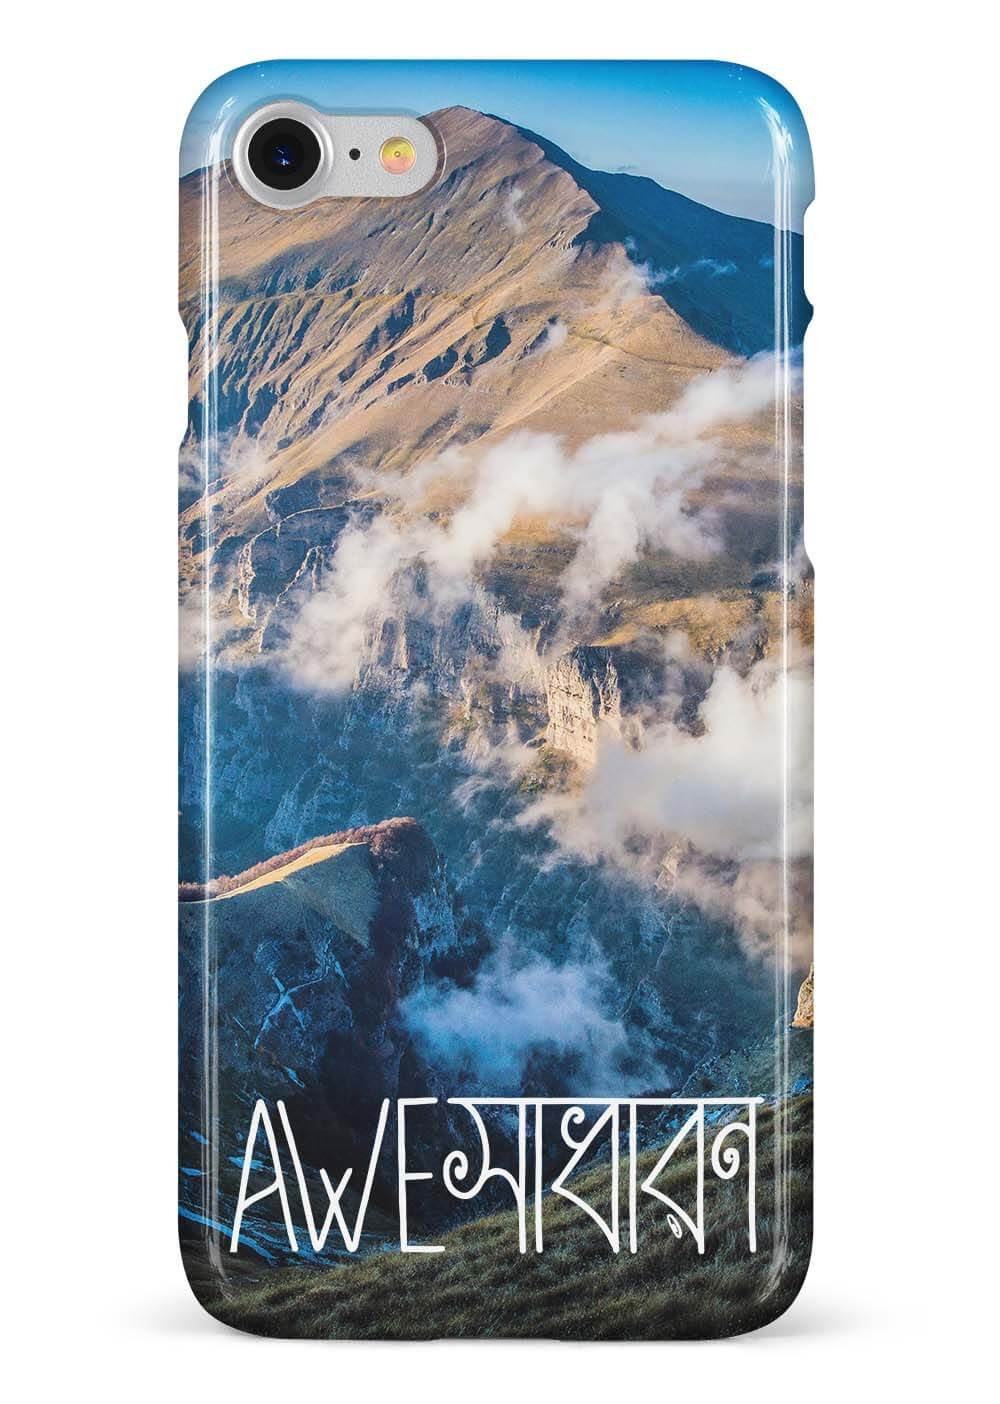 Aweshadharon Mobile Cover